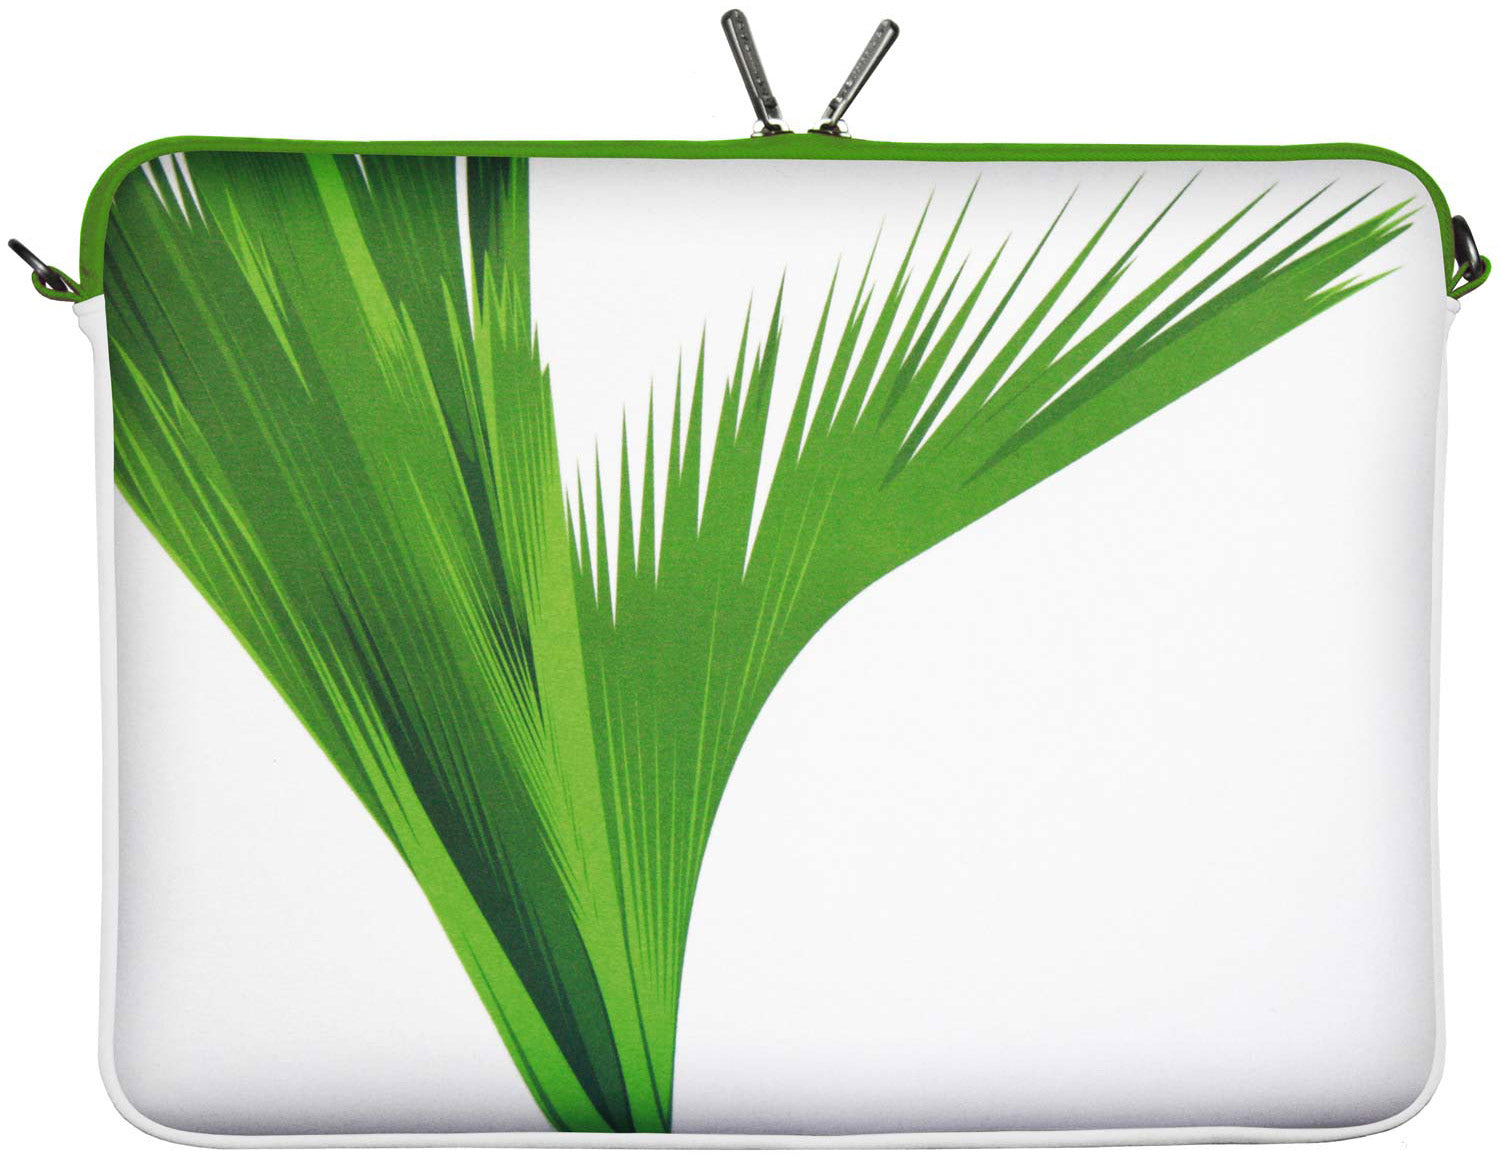 LS138 Green Designer Laptop Tasche weiß-grün für Tablets, Laptops und Macbooks